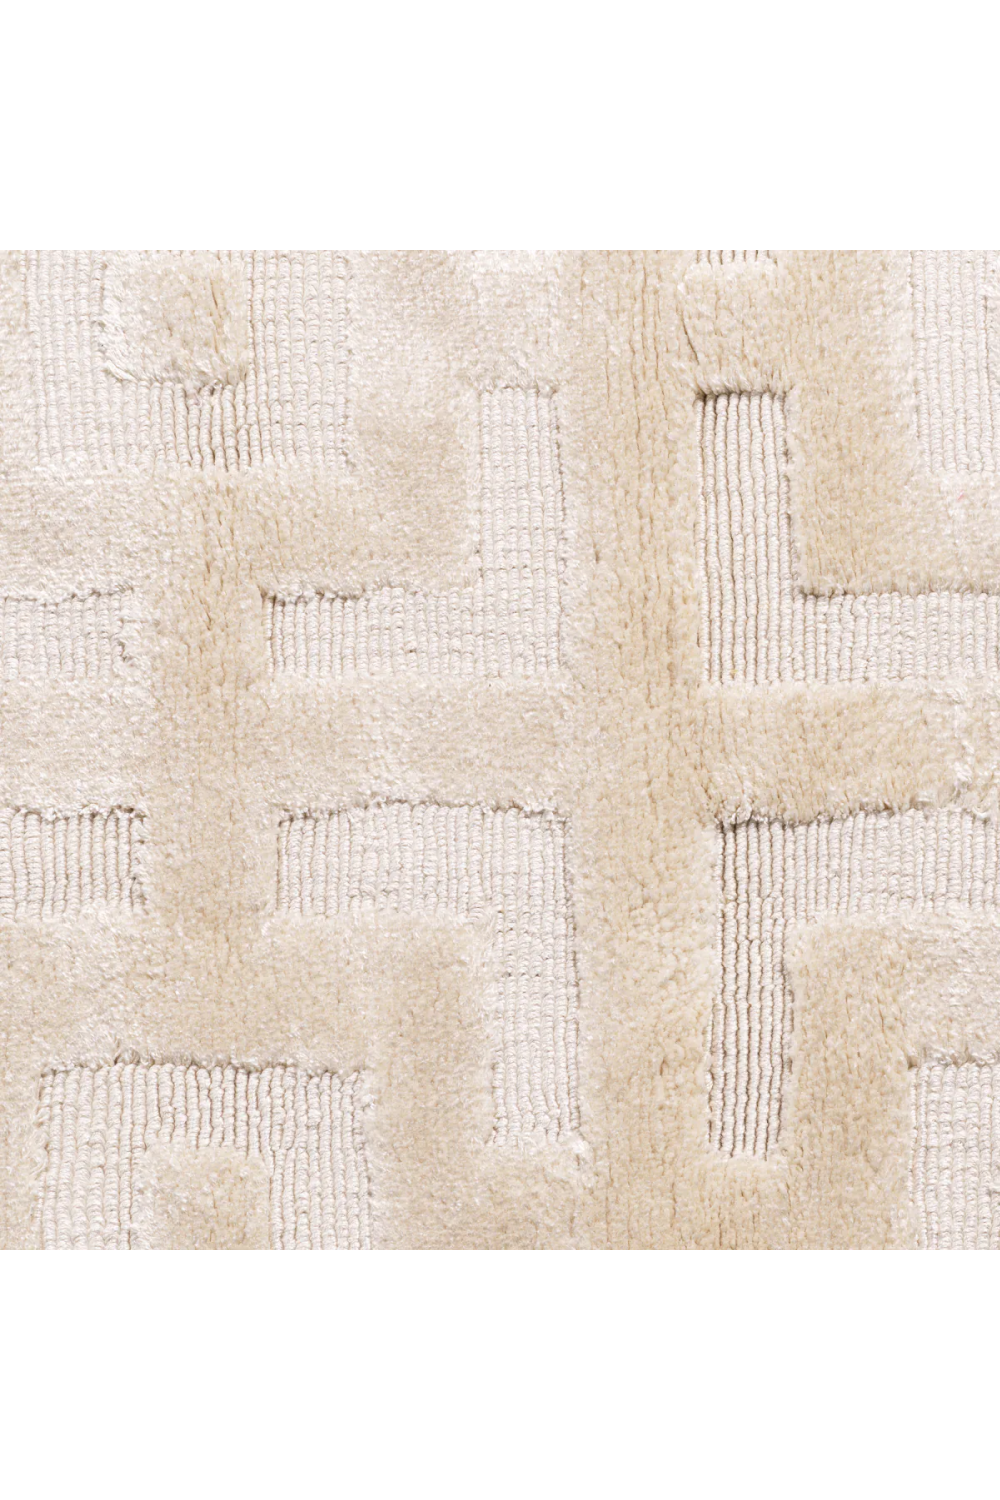 Ivory Carpet 7' x 10' | Eichholtz Reeves | Oroa.com